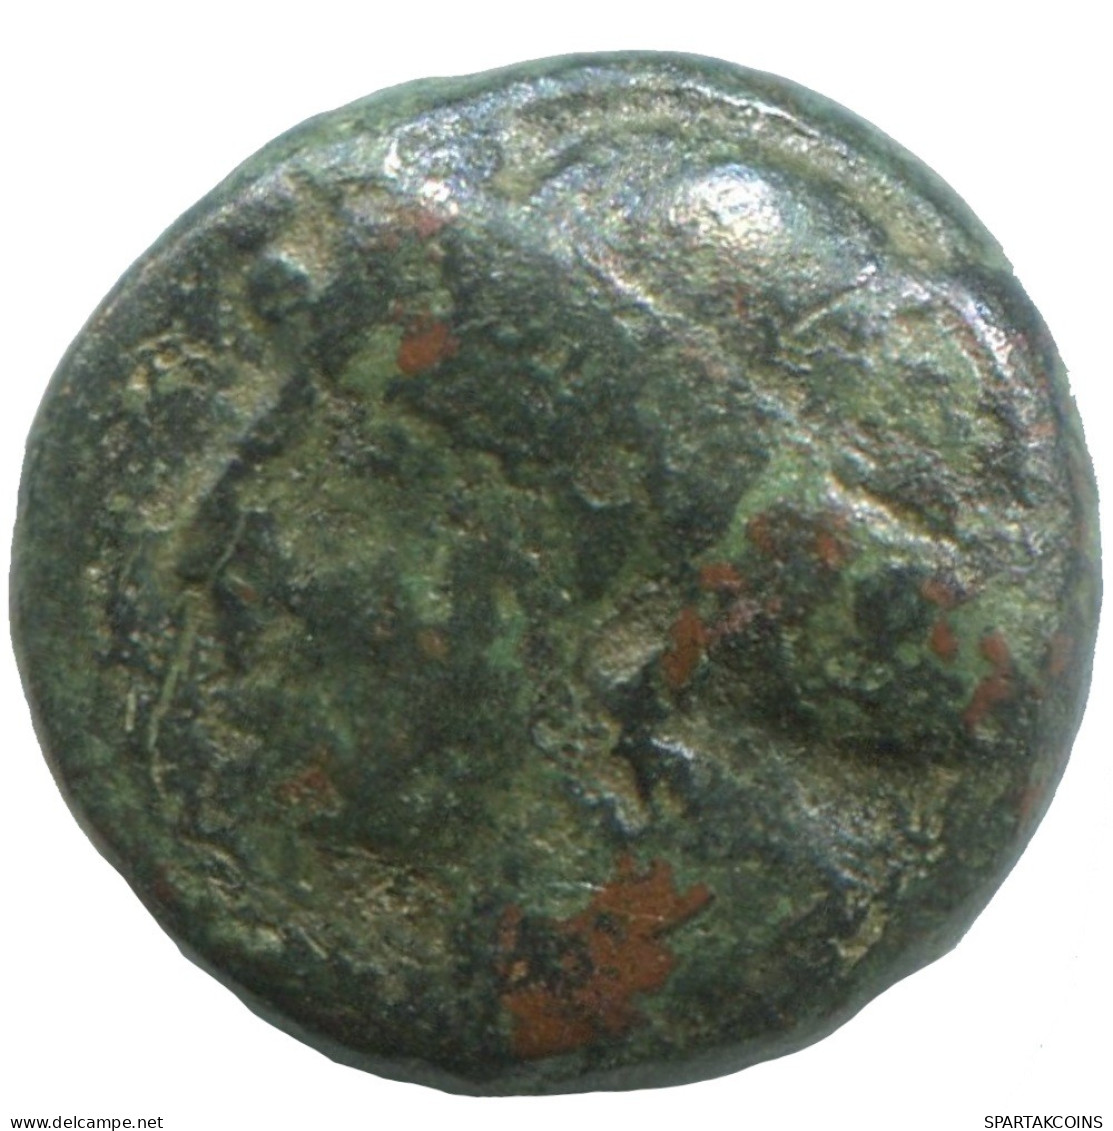 Ancient Antike Authentische Original GRIECHISCHE Münze 1.9g/12mm #SAV1287.11.D.A - Greche